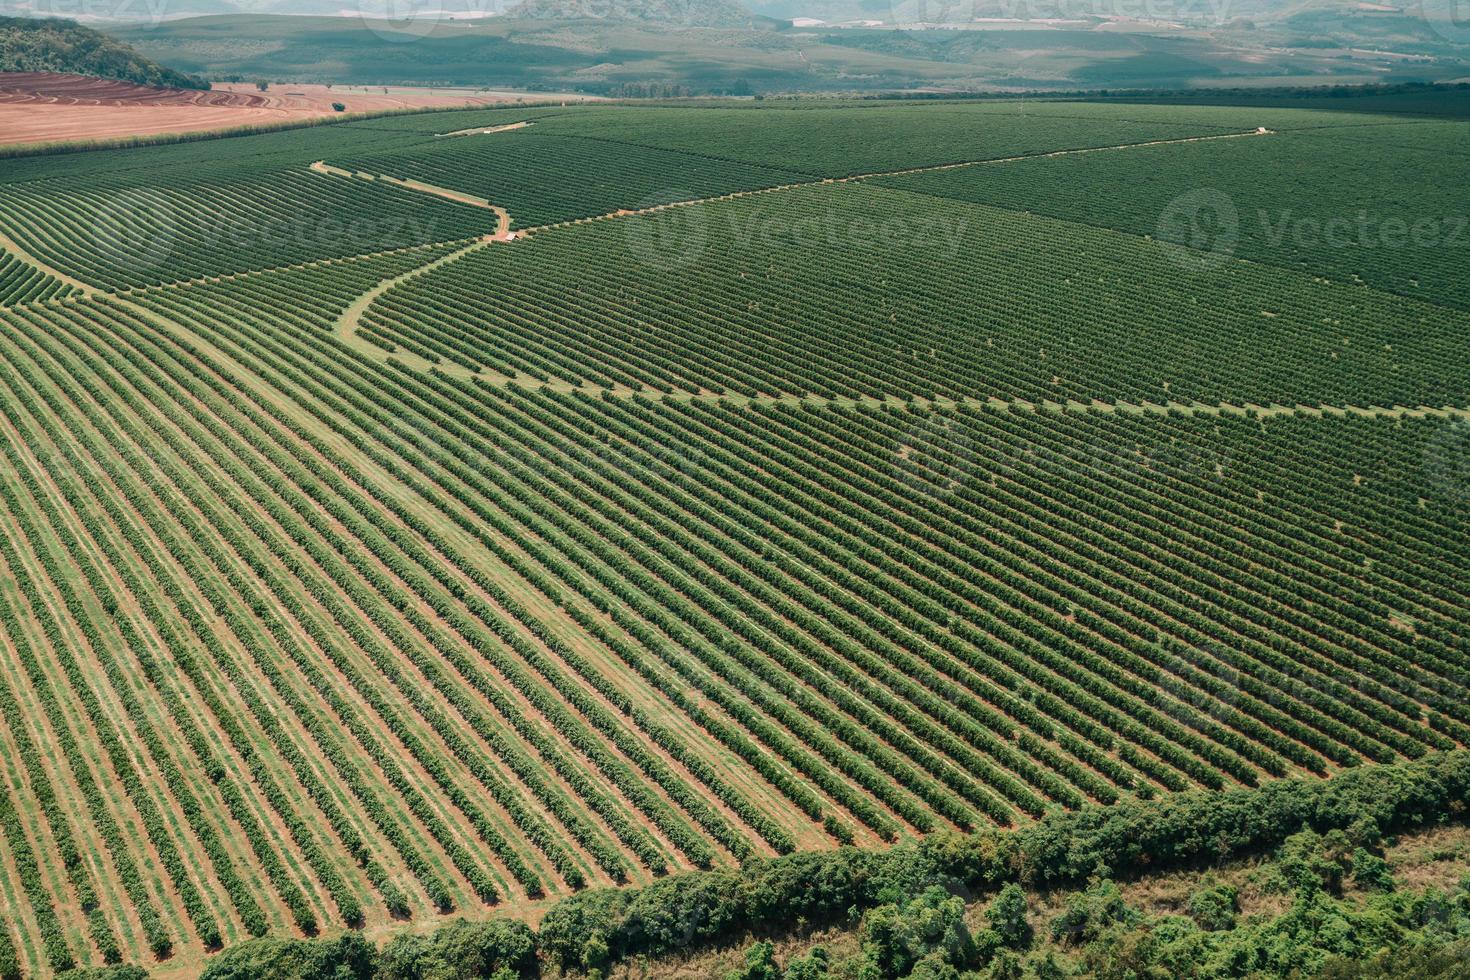 vista aérea de uma fazenda de café. plantação de café. cultivo de café foto